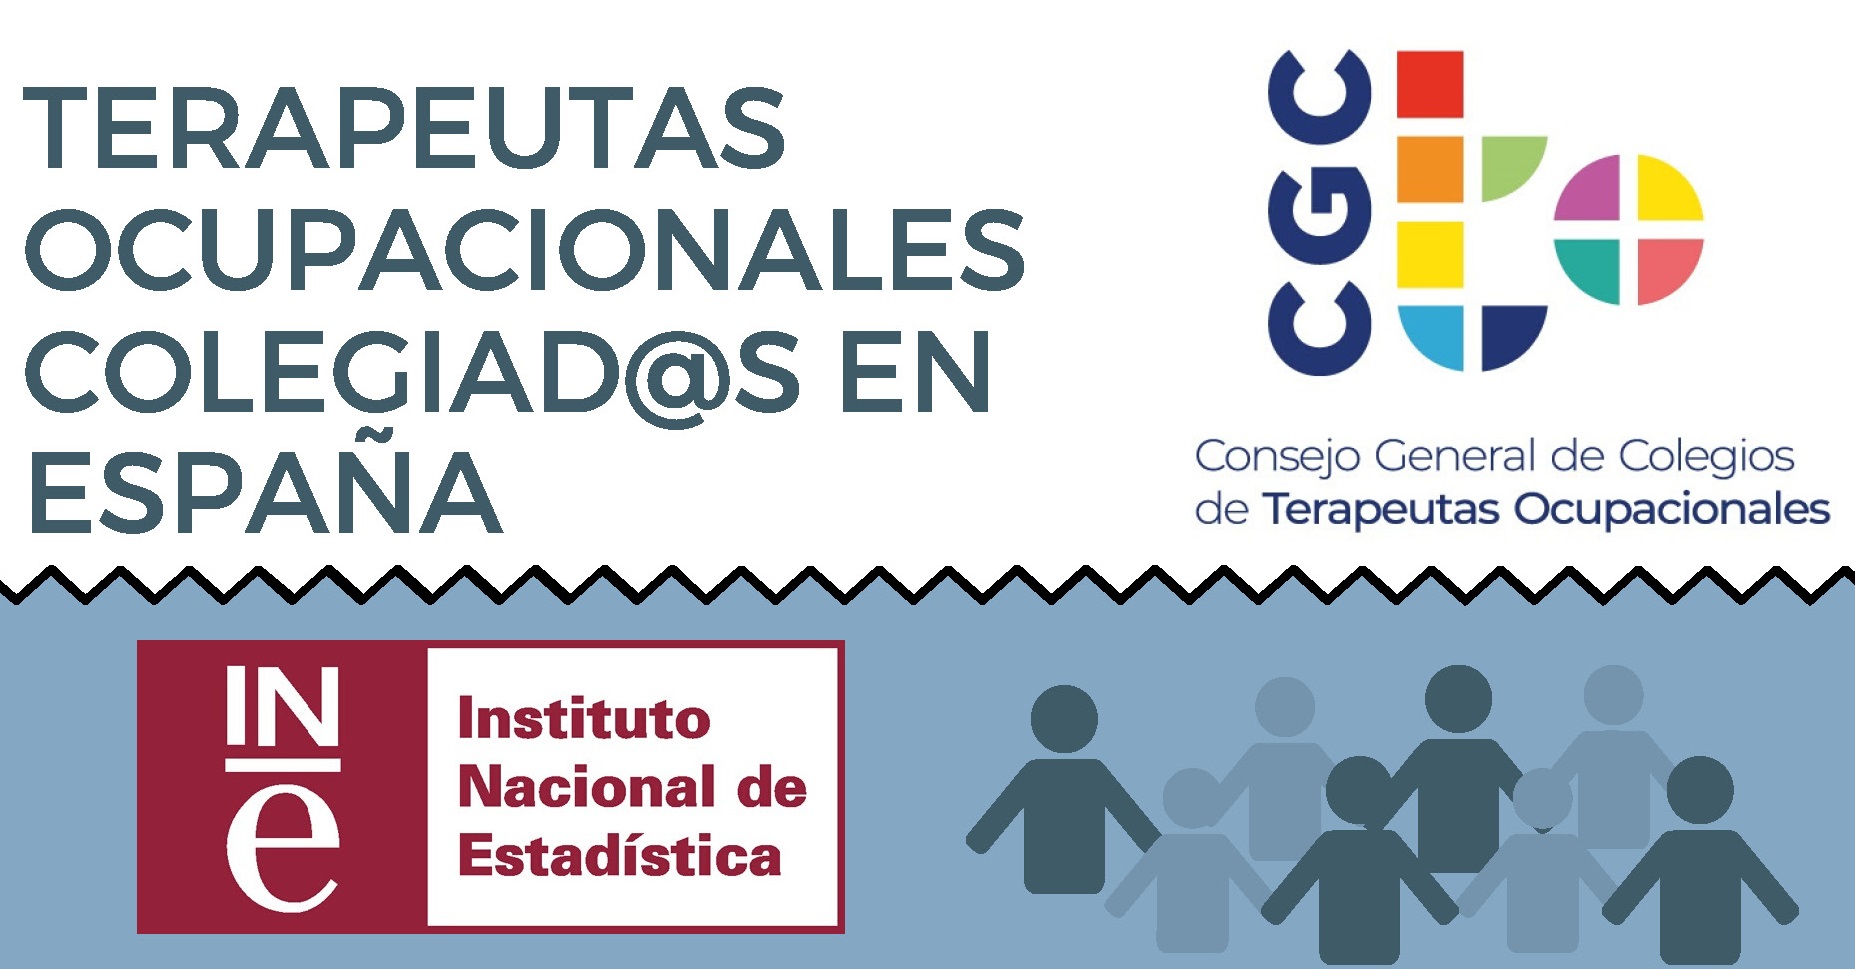 MINIATURA INE 2019 TERAPEUTAS OCUPACIONALESCOLEGIADOS - Estadística de profesionales Sanitarios Colegiados 2019